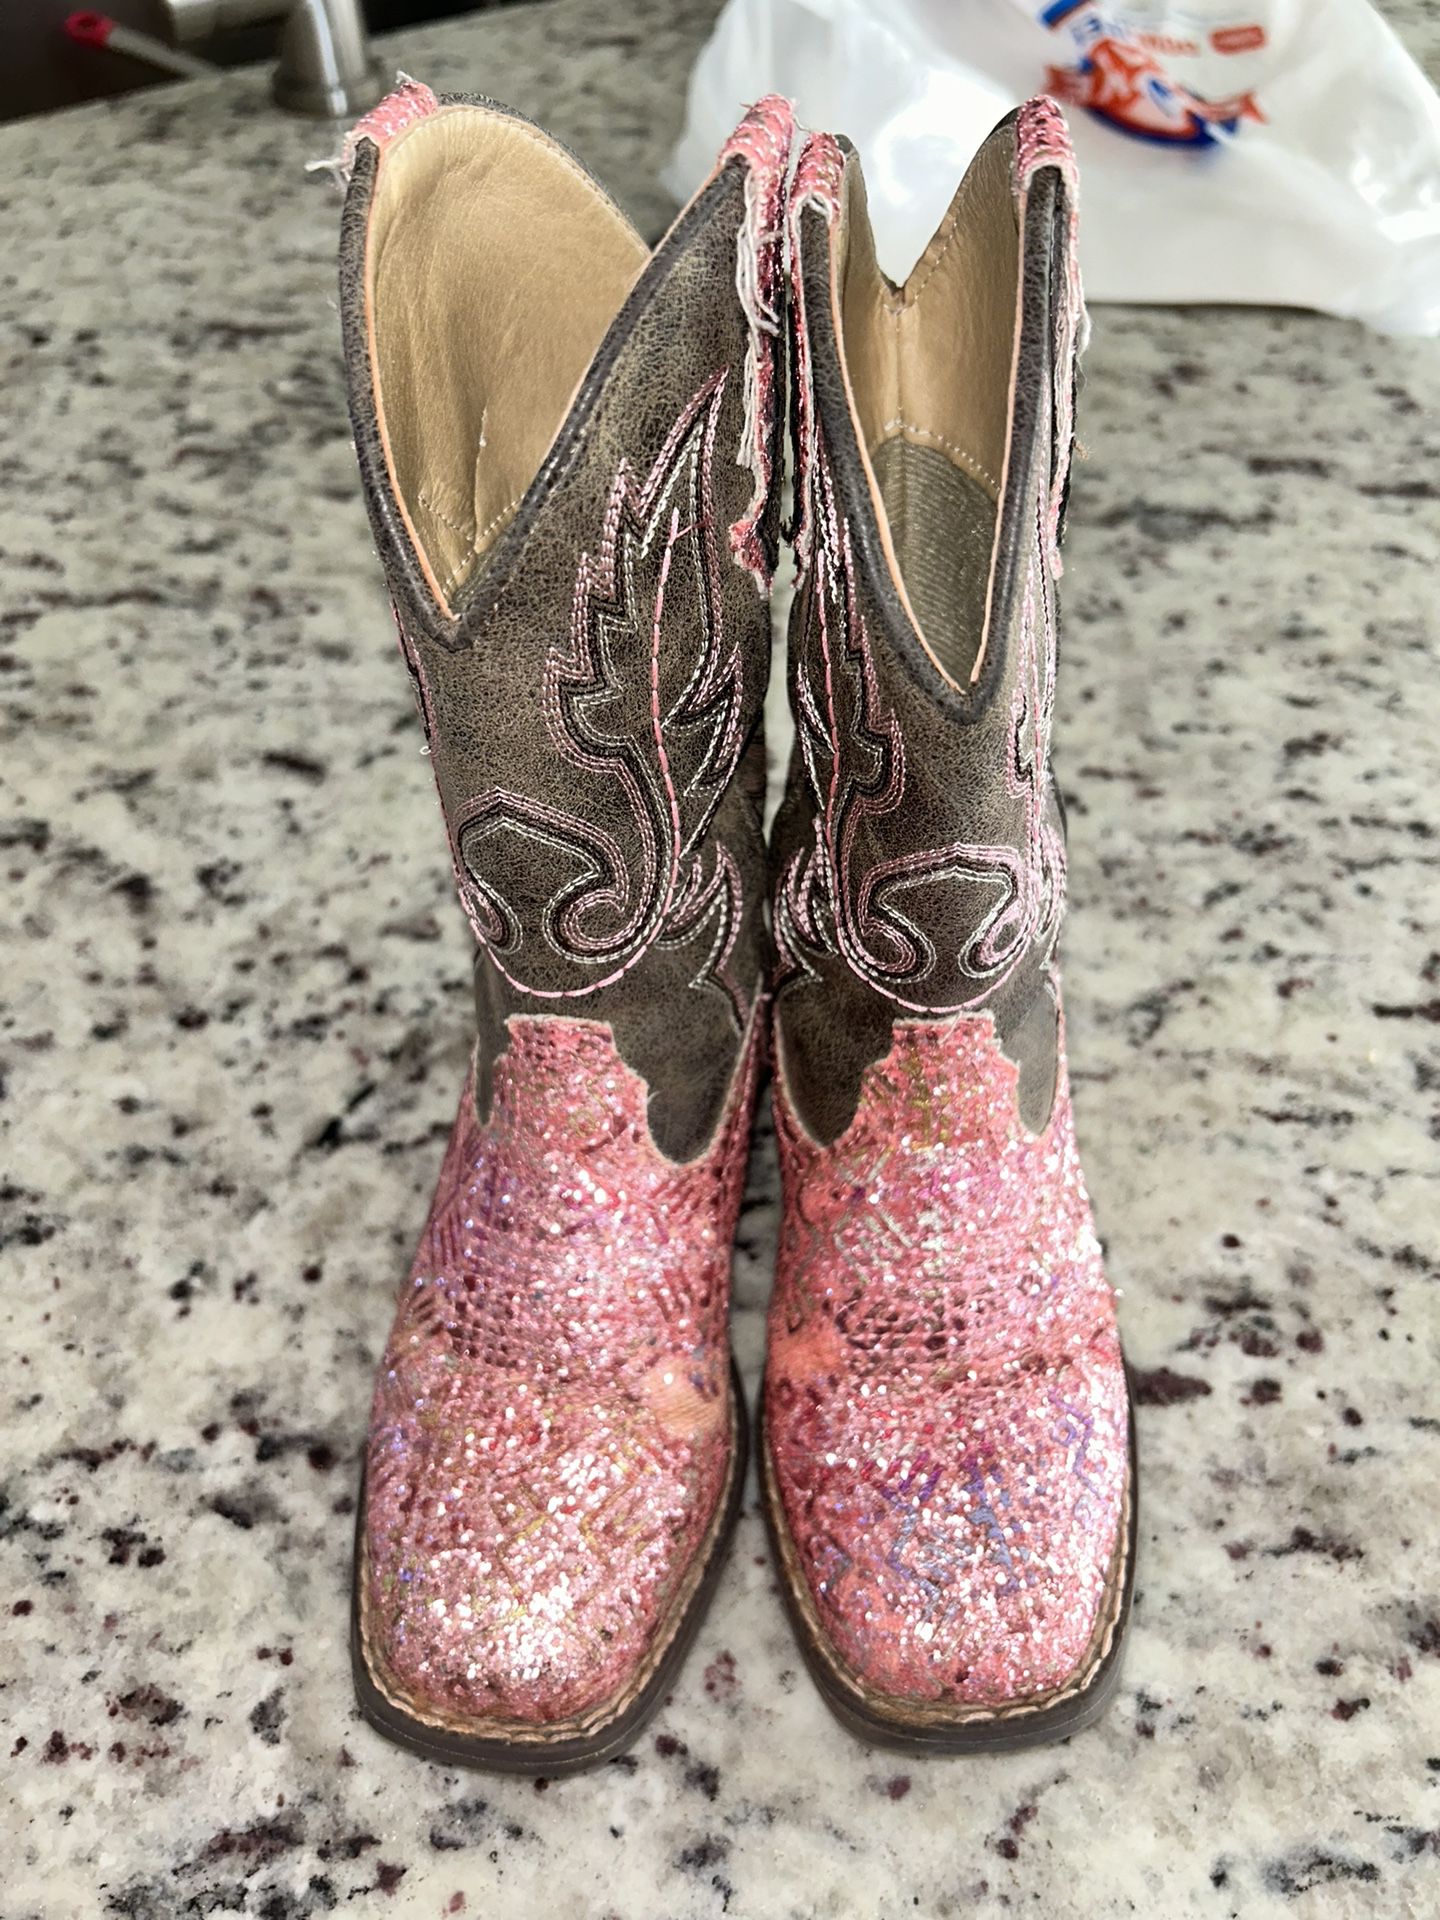 Girls Cowboy Boots